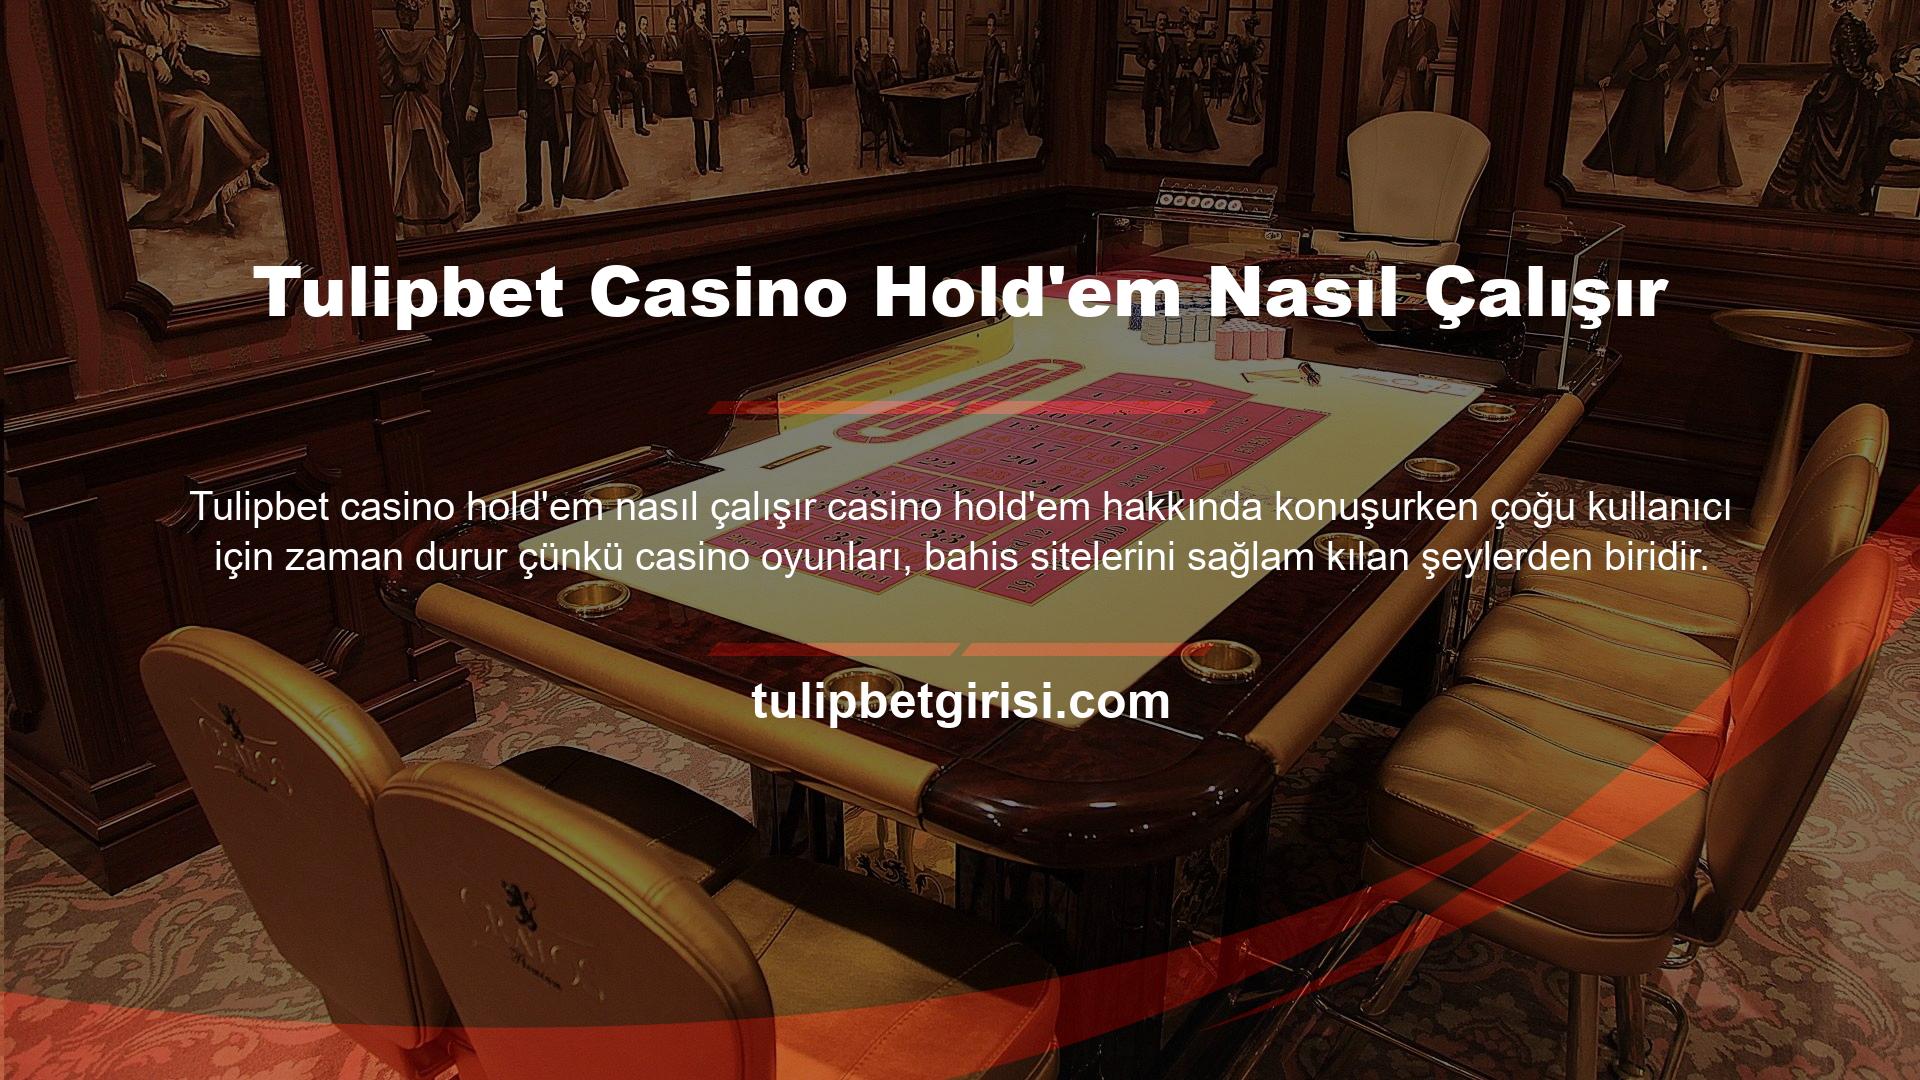 Casino Hold'em veya casino oyunları, kullanıcılar arasında oldukça popülerdir